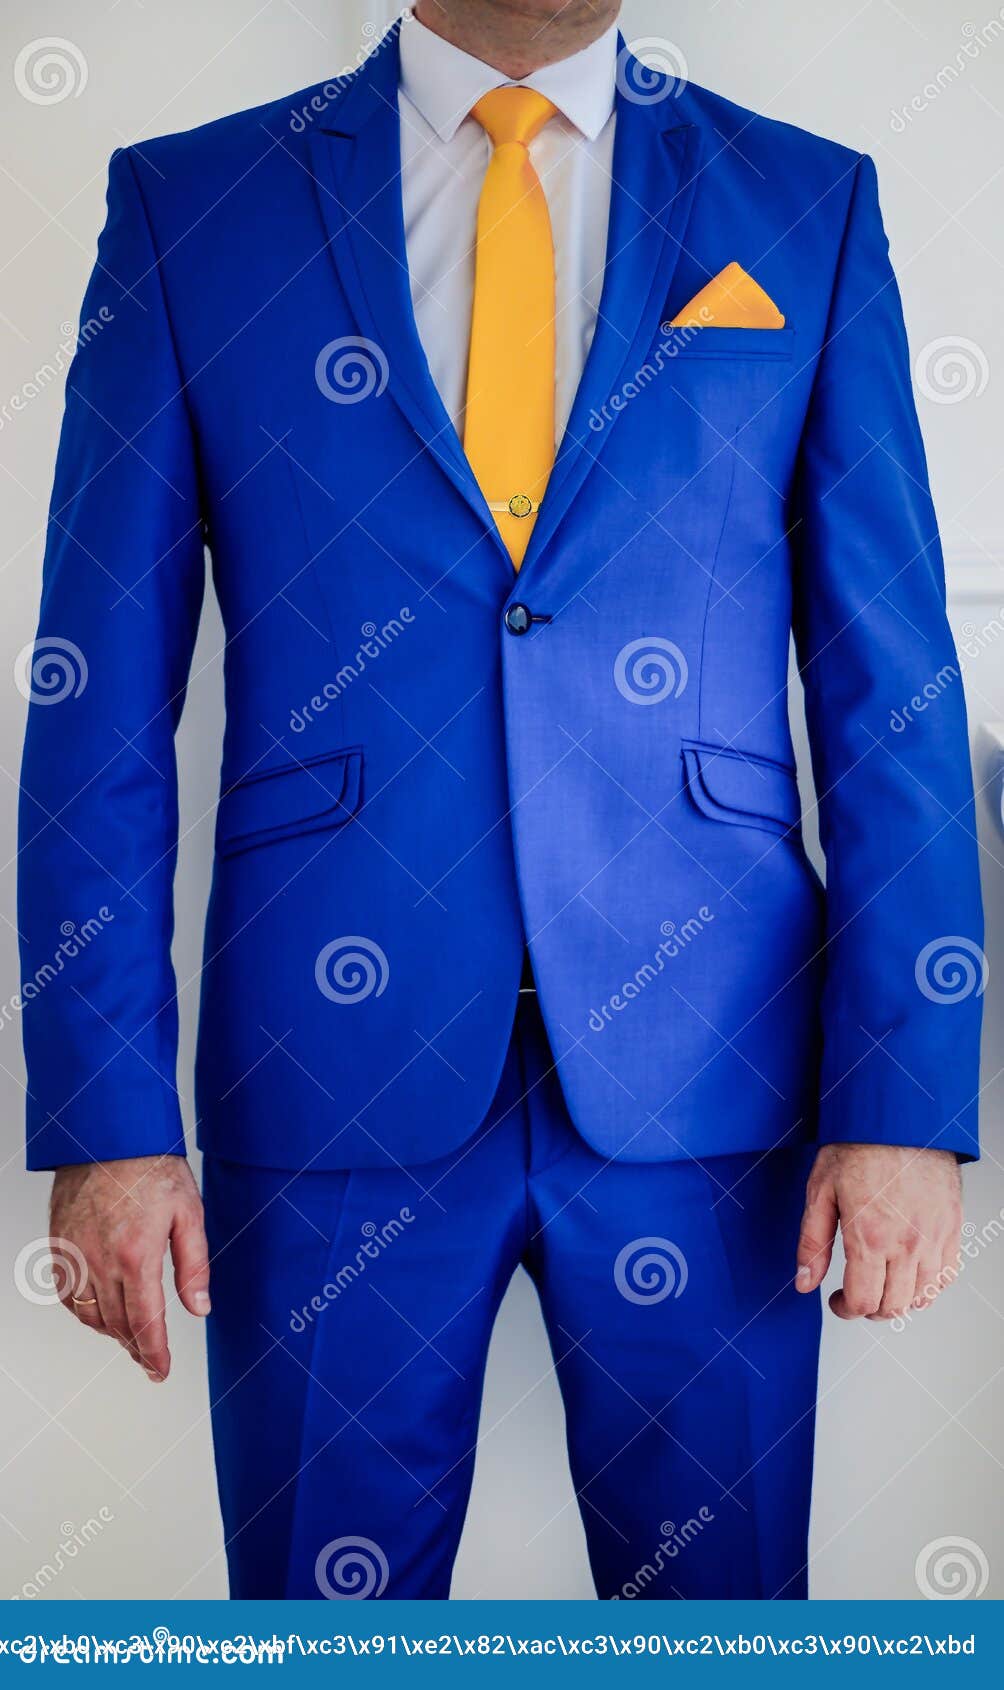 Traje Azul Del ` S Hombres Traje De La Boda Para Hombres Casarse Desgaste Foto de archivo - Imagen de moderno, chaqueta: 125530678